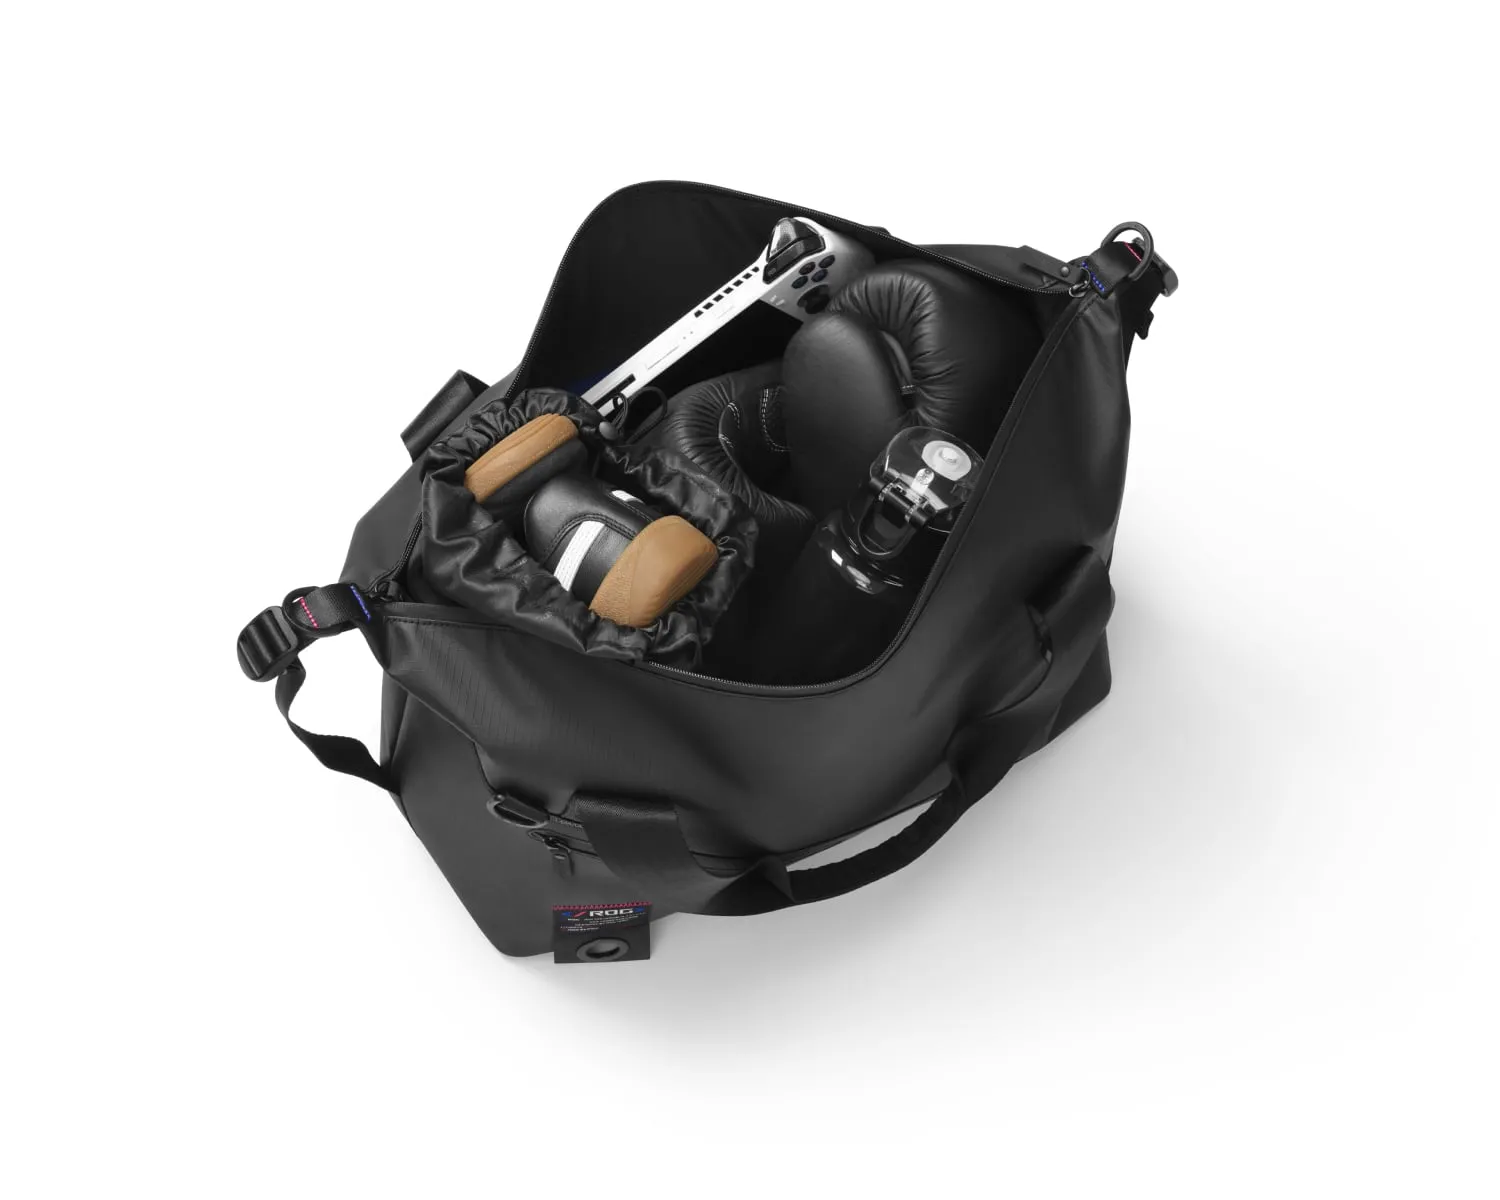 Pohled shora do hlavní přihrádky tašky ROG SLASH Duffle s jasně viditelnými botami a zařízením ROG Ally